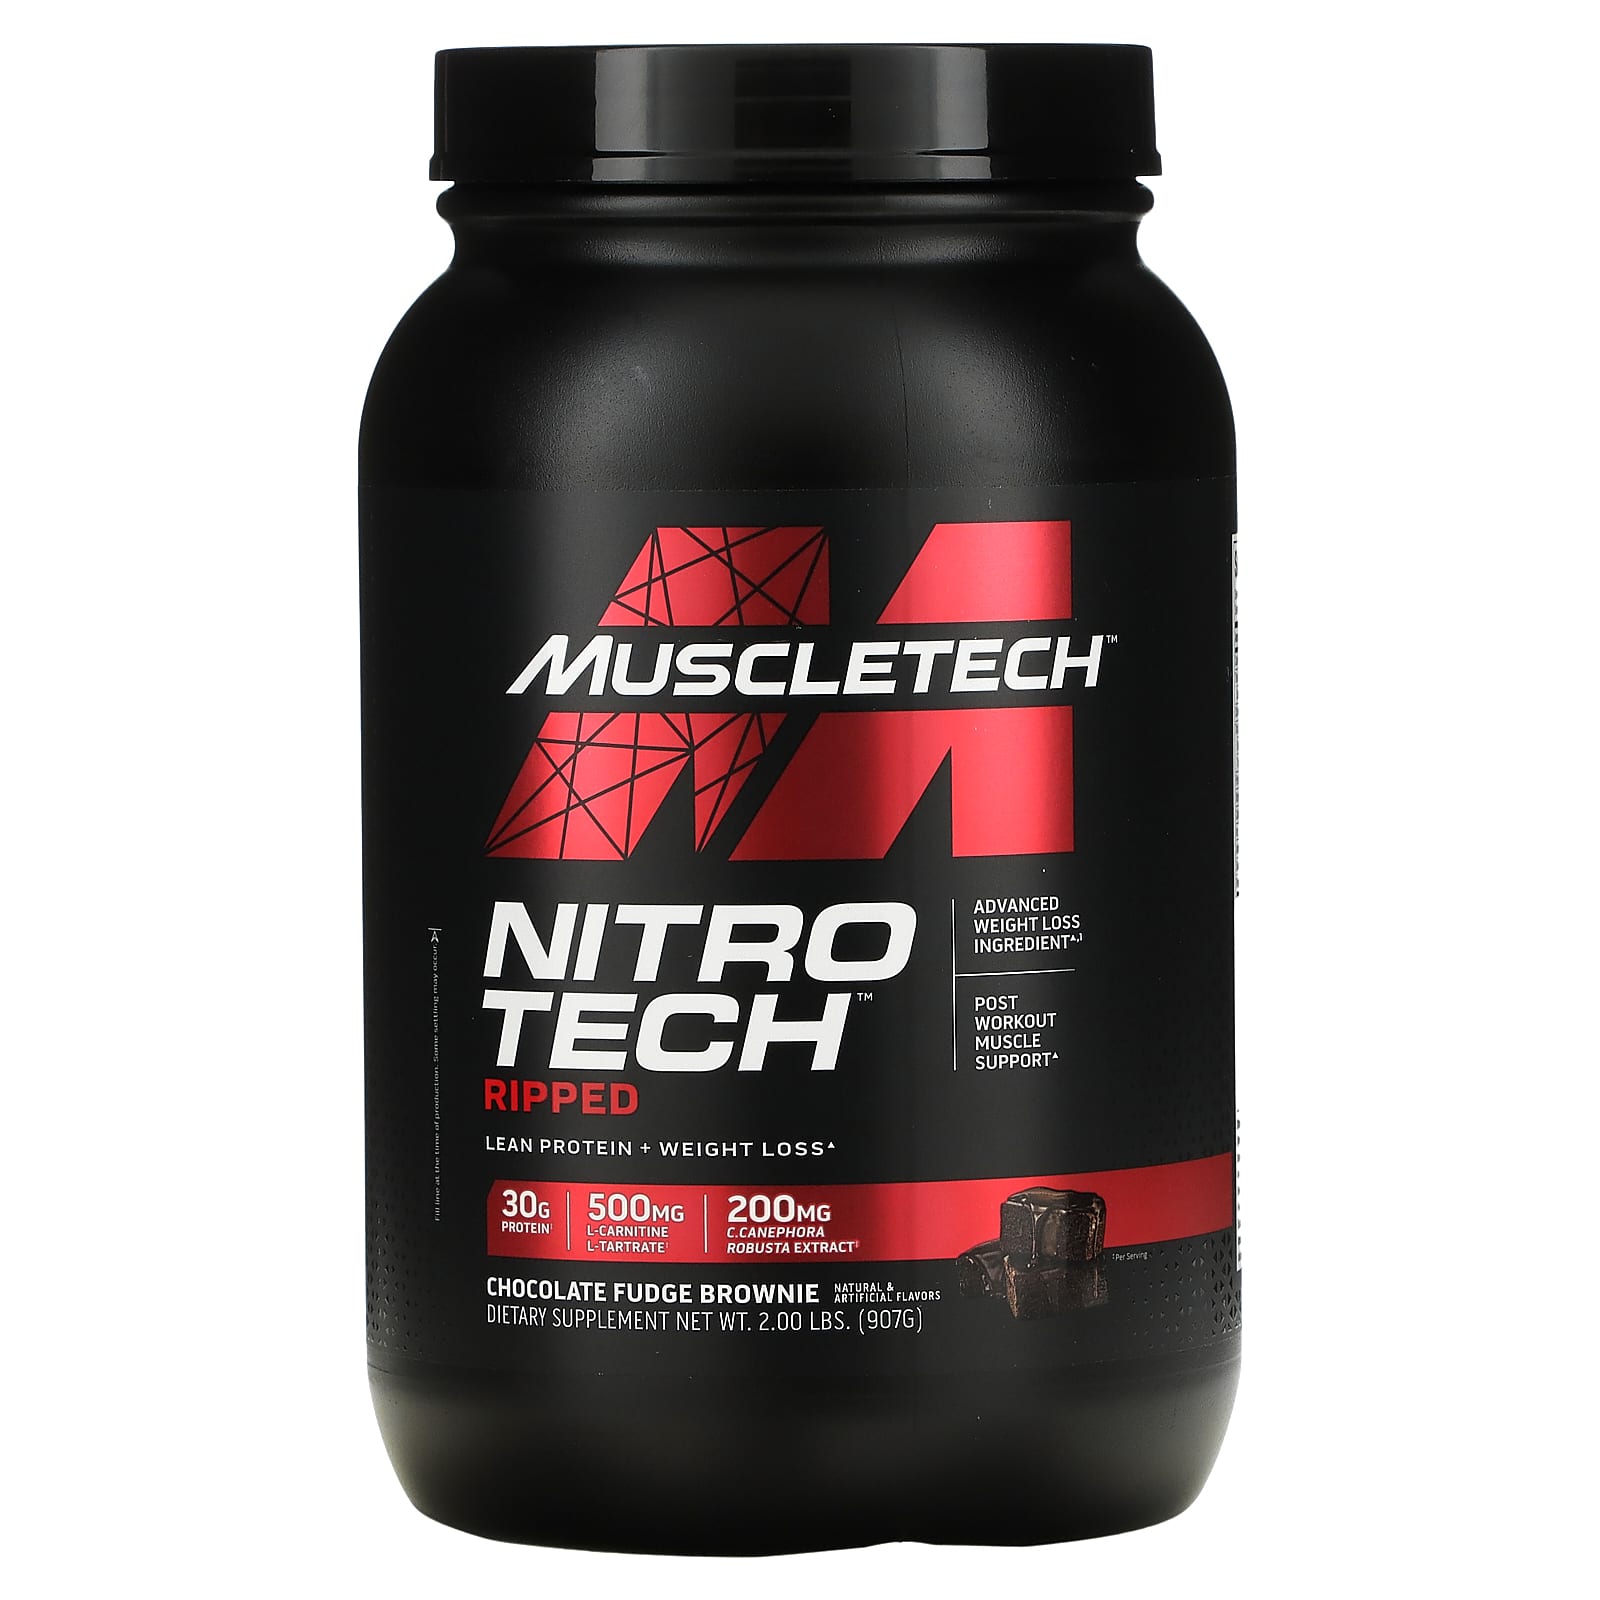 Muscletech, Nitro-Tech（ニトロテック）リップド、究極のタンパク質＋減量成分、チョコレートファッジブラウニー、907g（